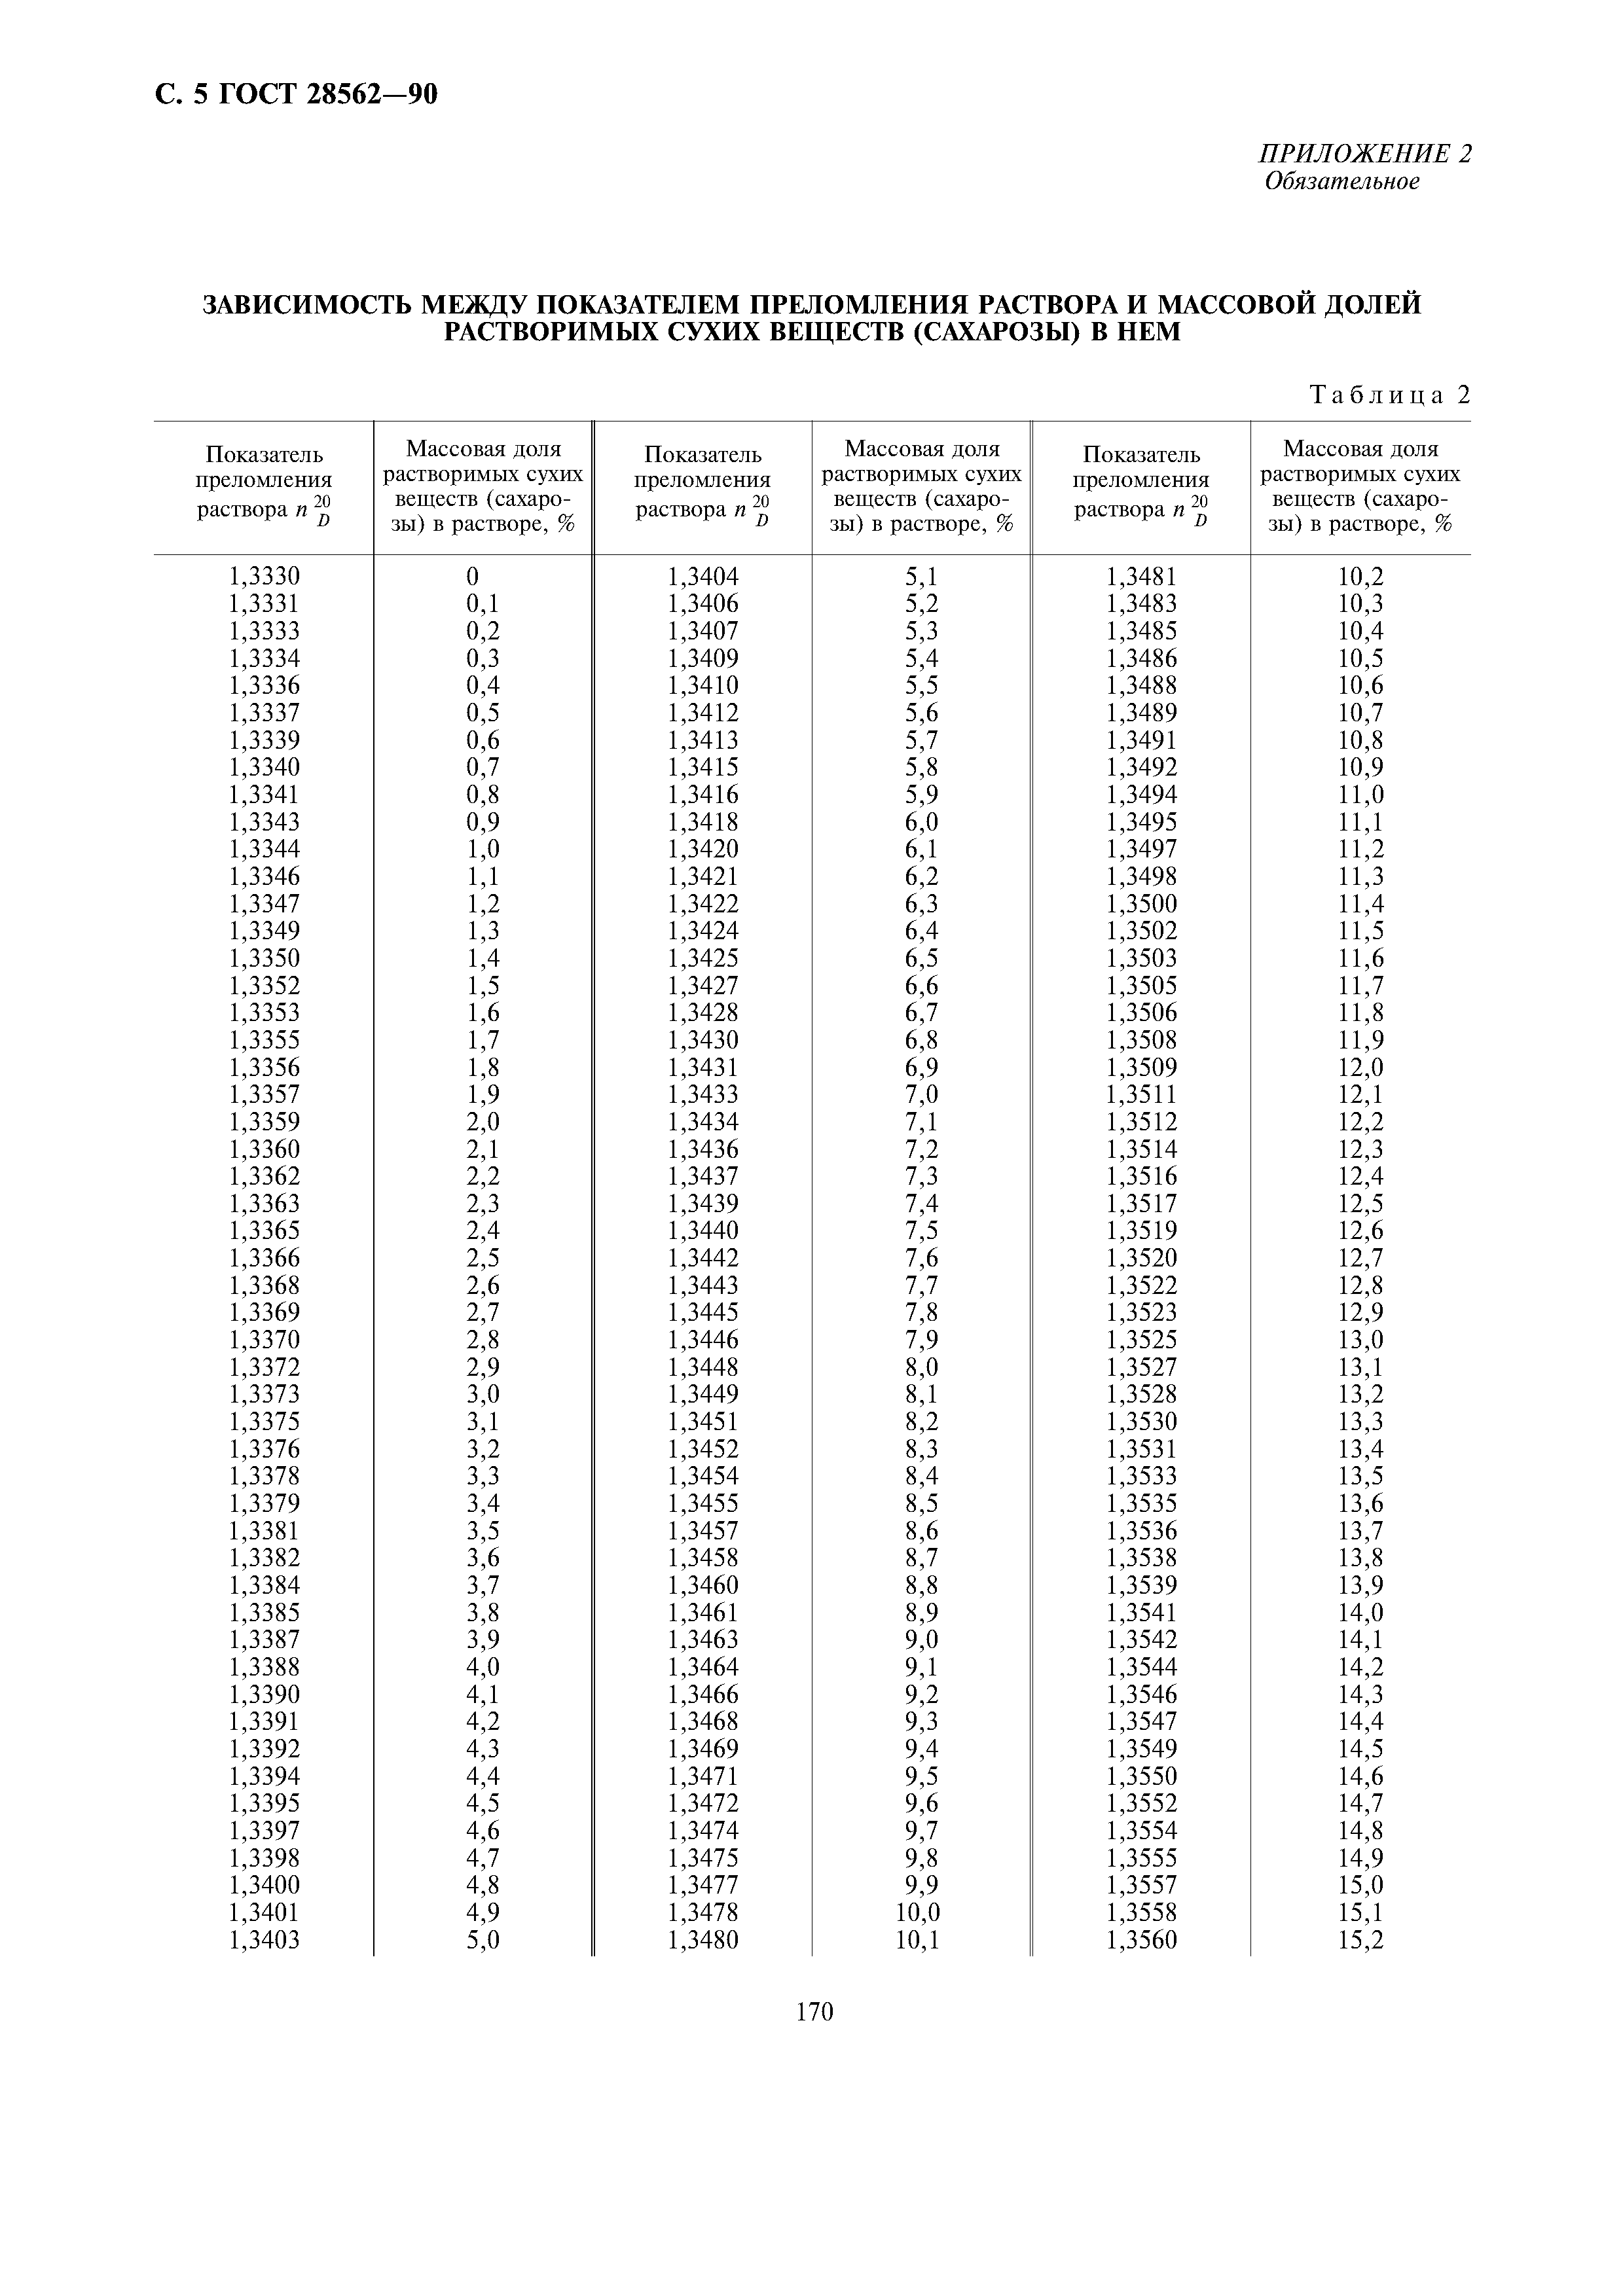 Таблица показателей преломления веществ